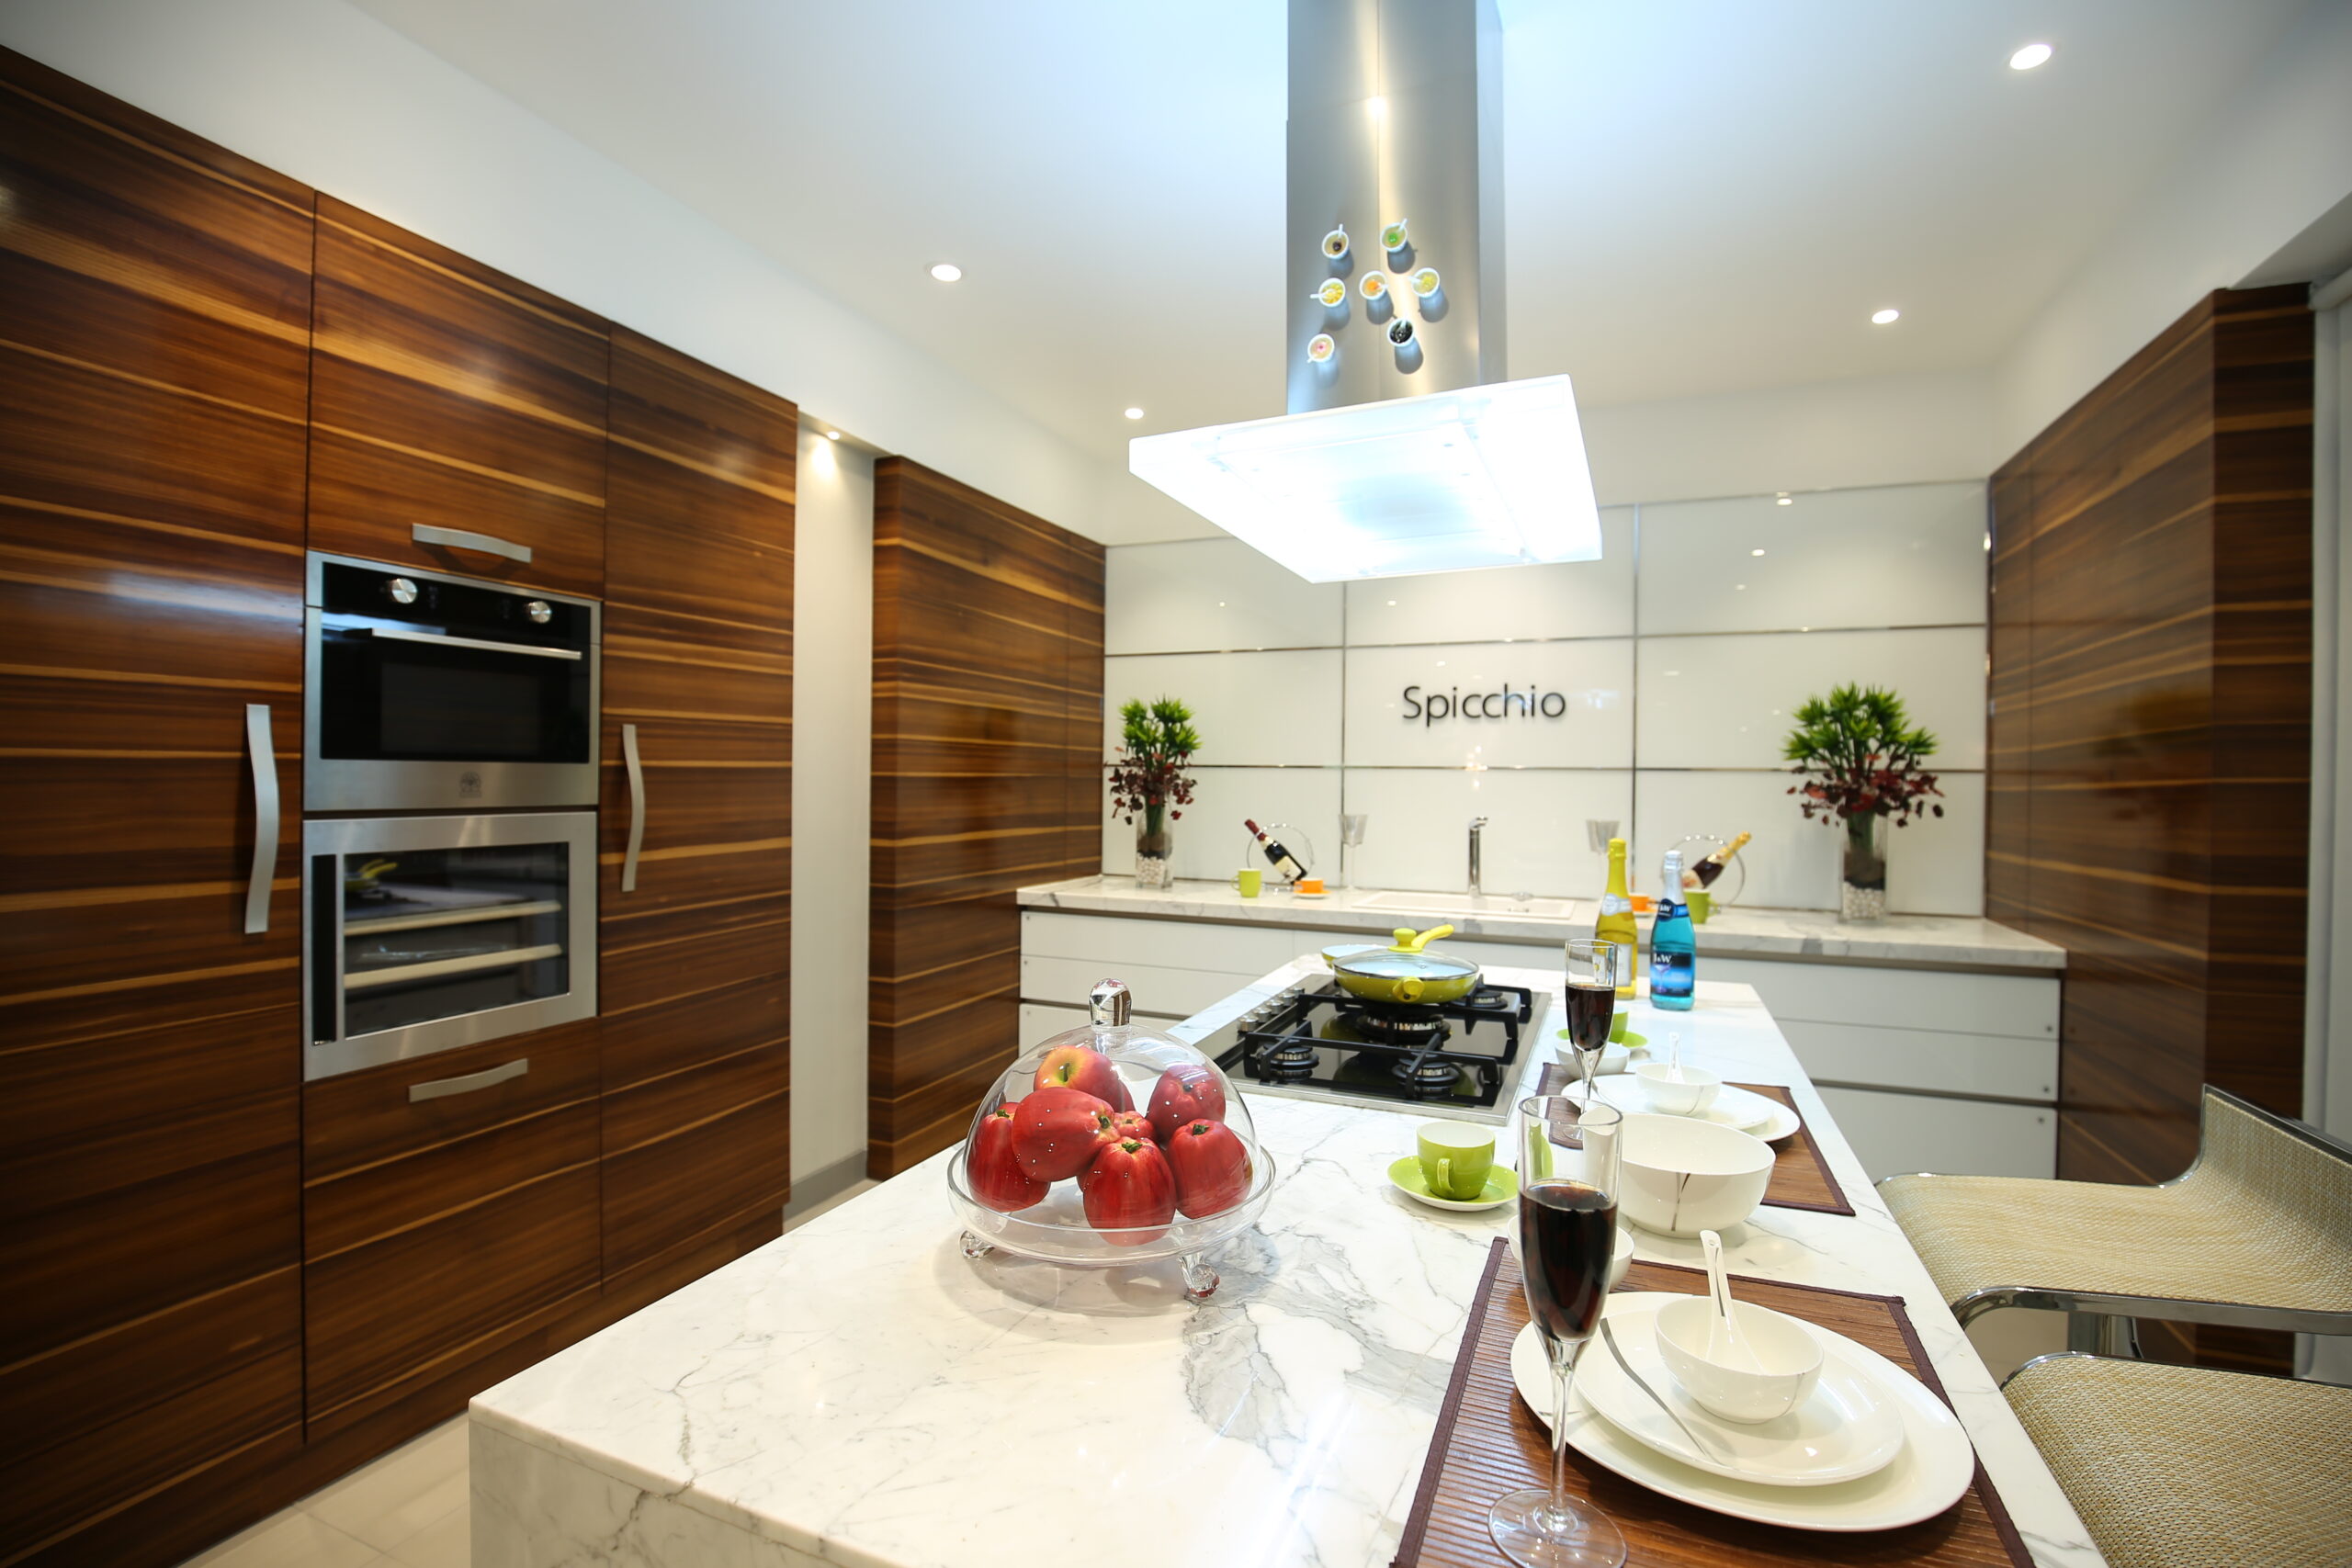 Luxury Modern Kitchen